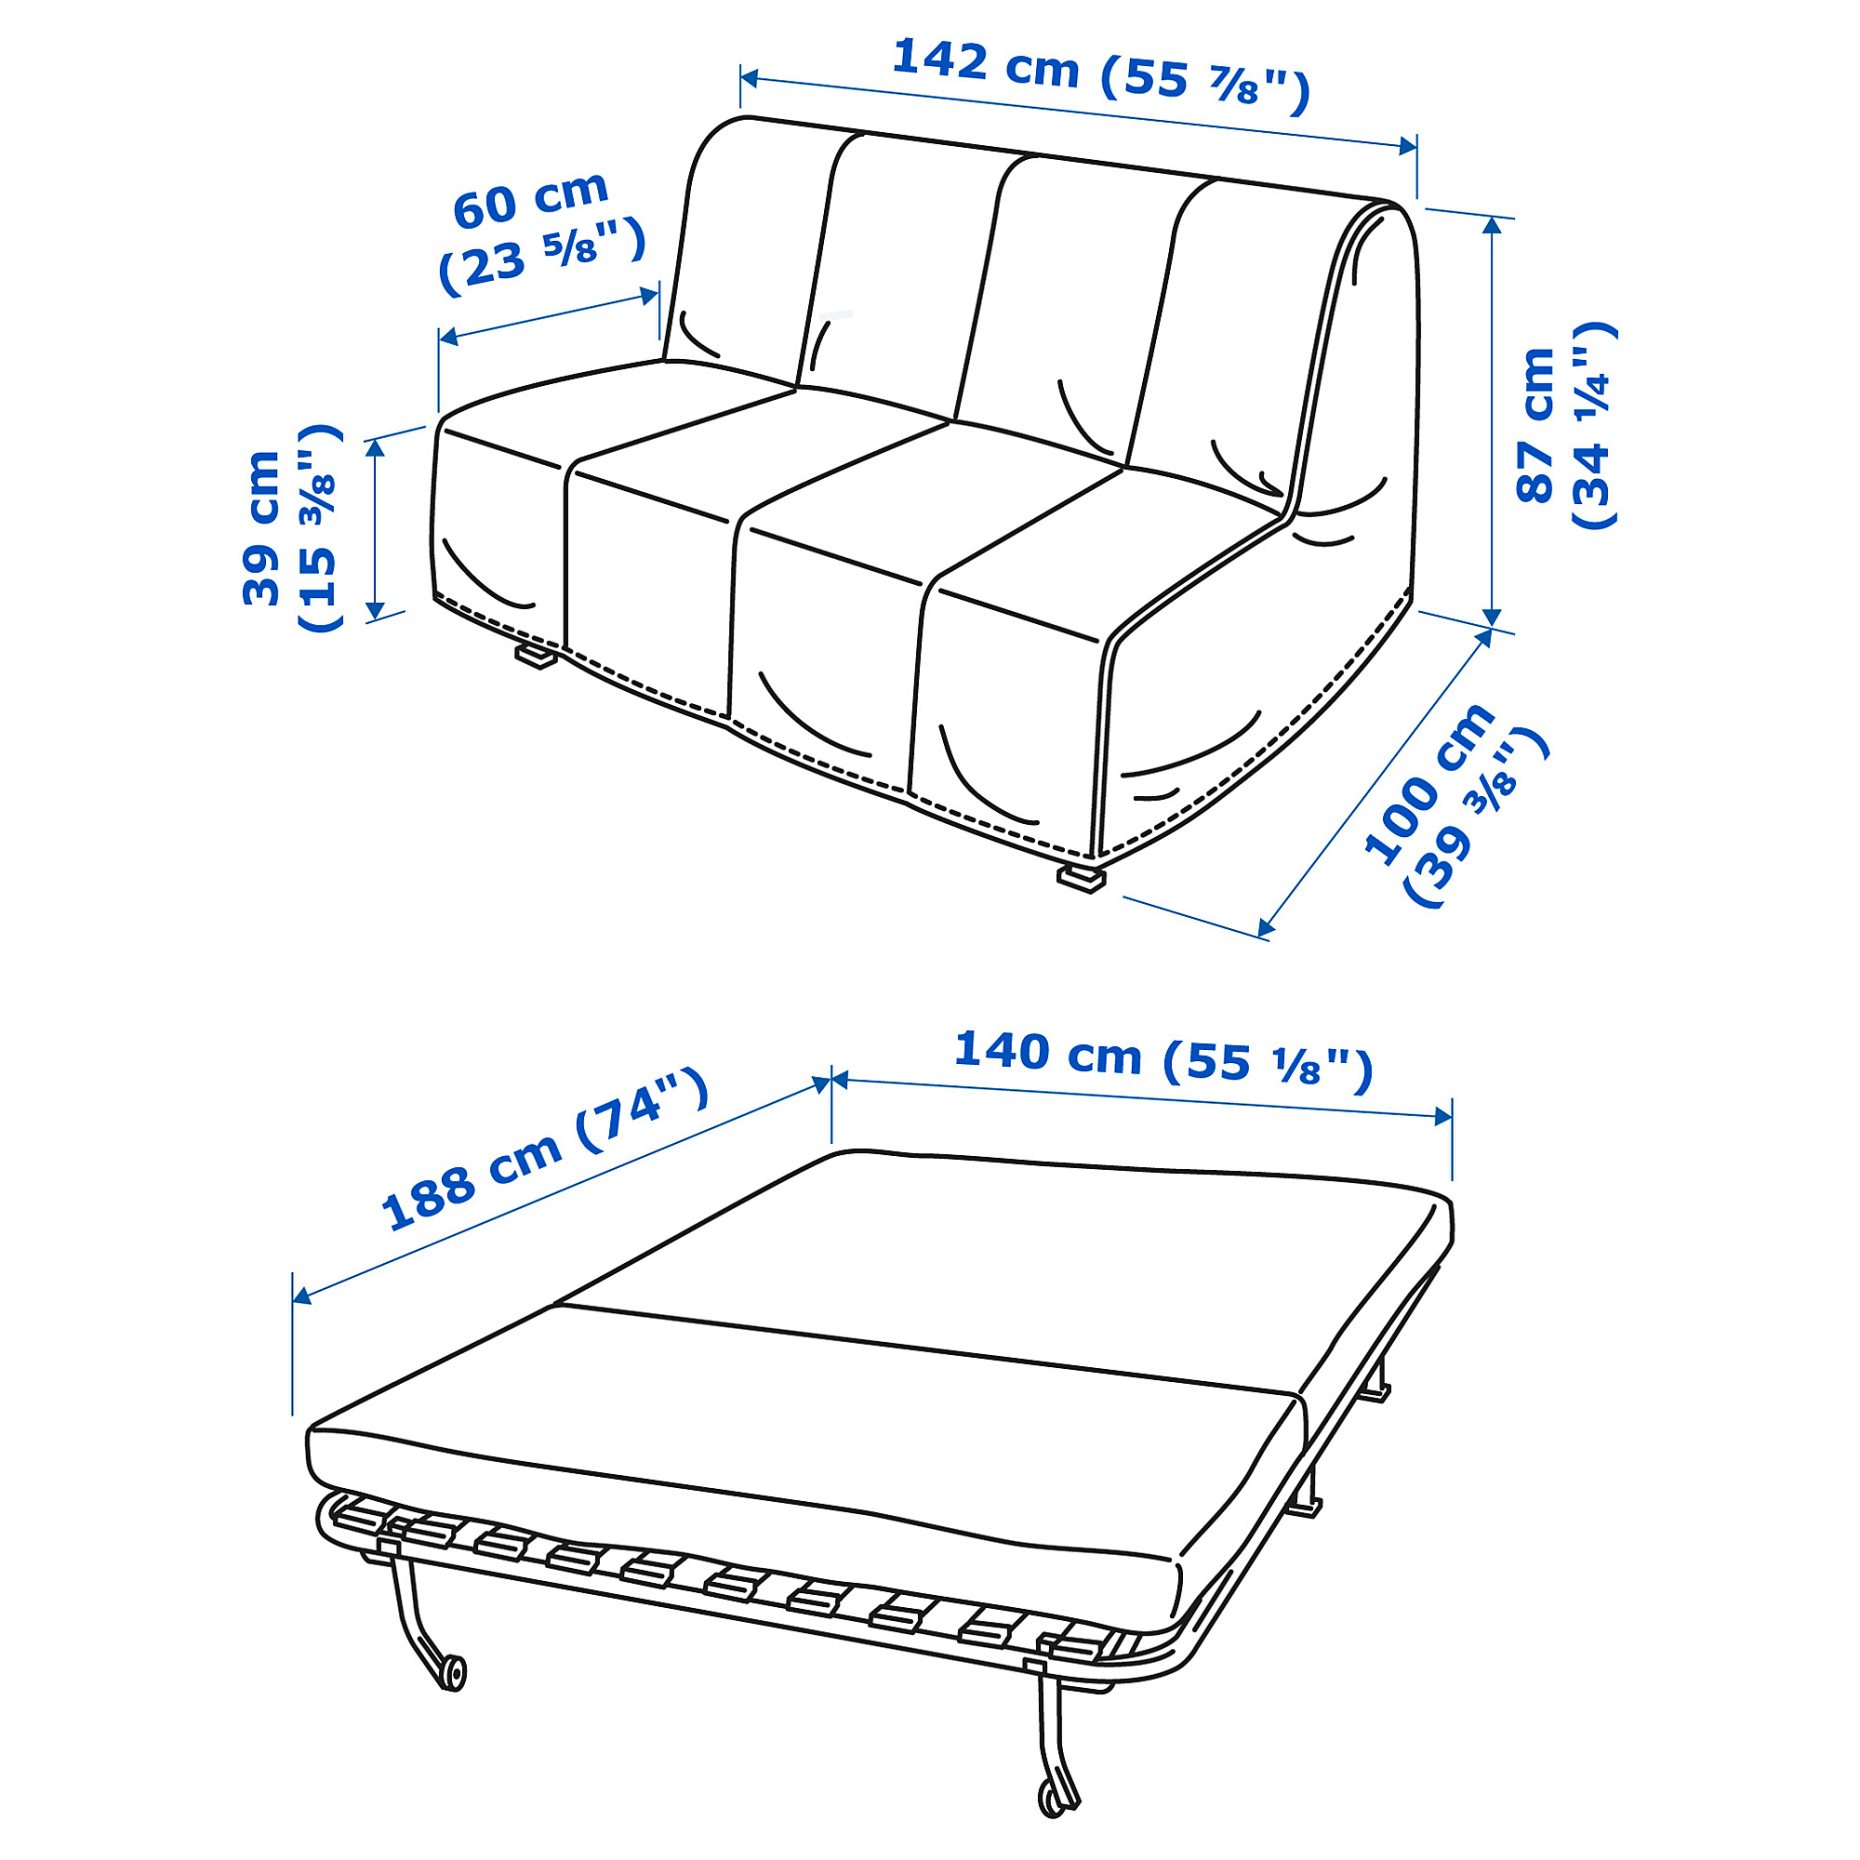 LYCKSELE MURBO, 2-seat sofa-bed, 893.871.35